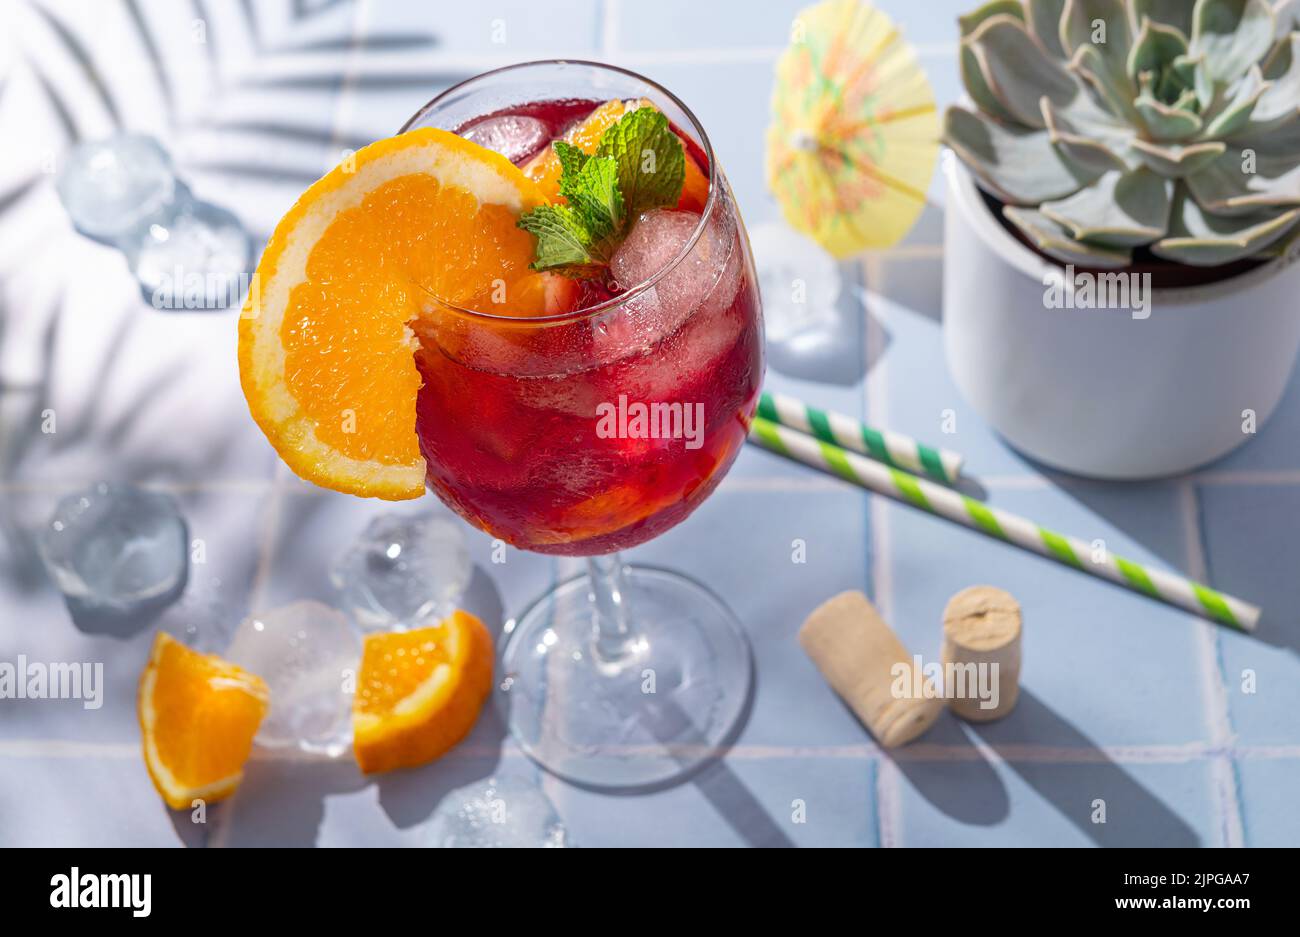 Tradizionale spagnolo estivo drink rinfrescante, cocktail, Tinto de verano. Foto Stock